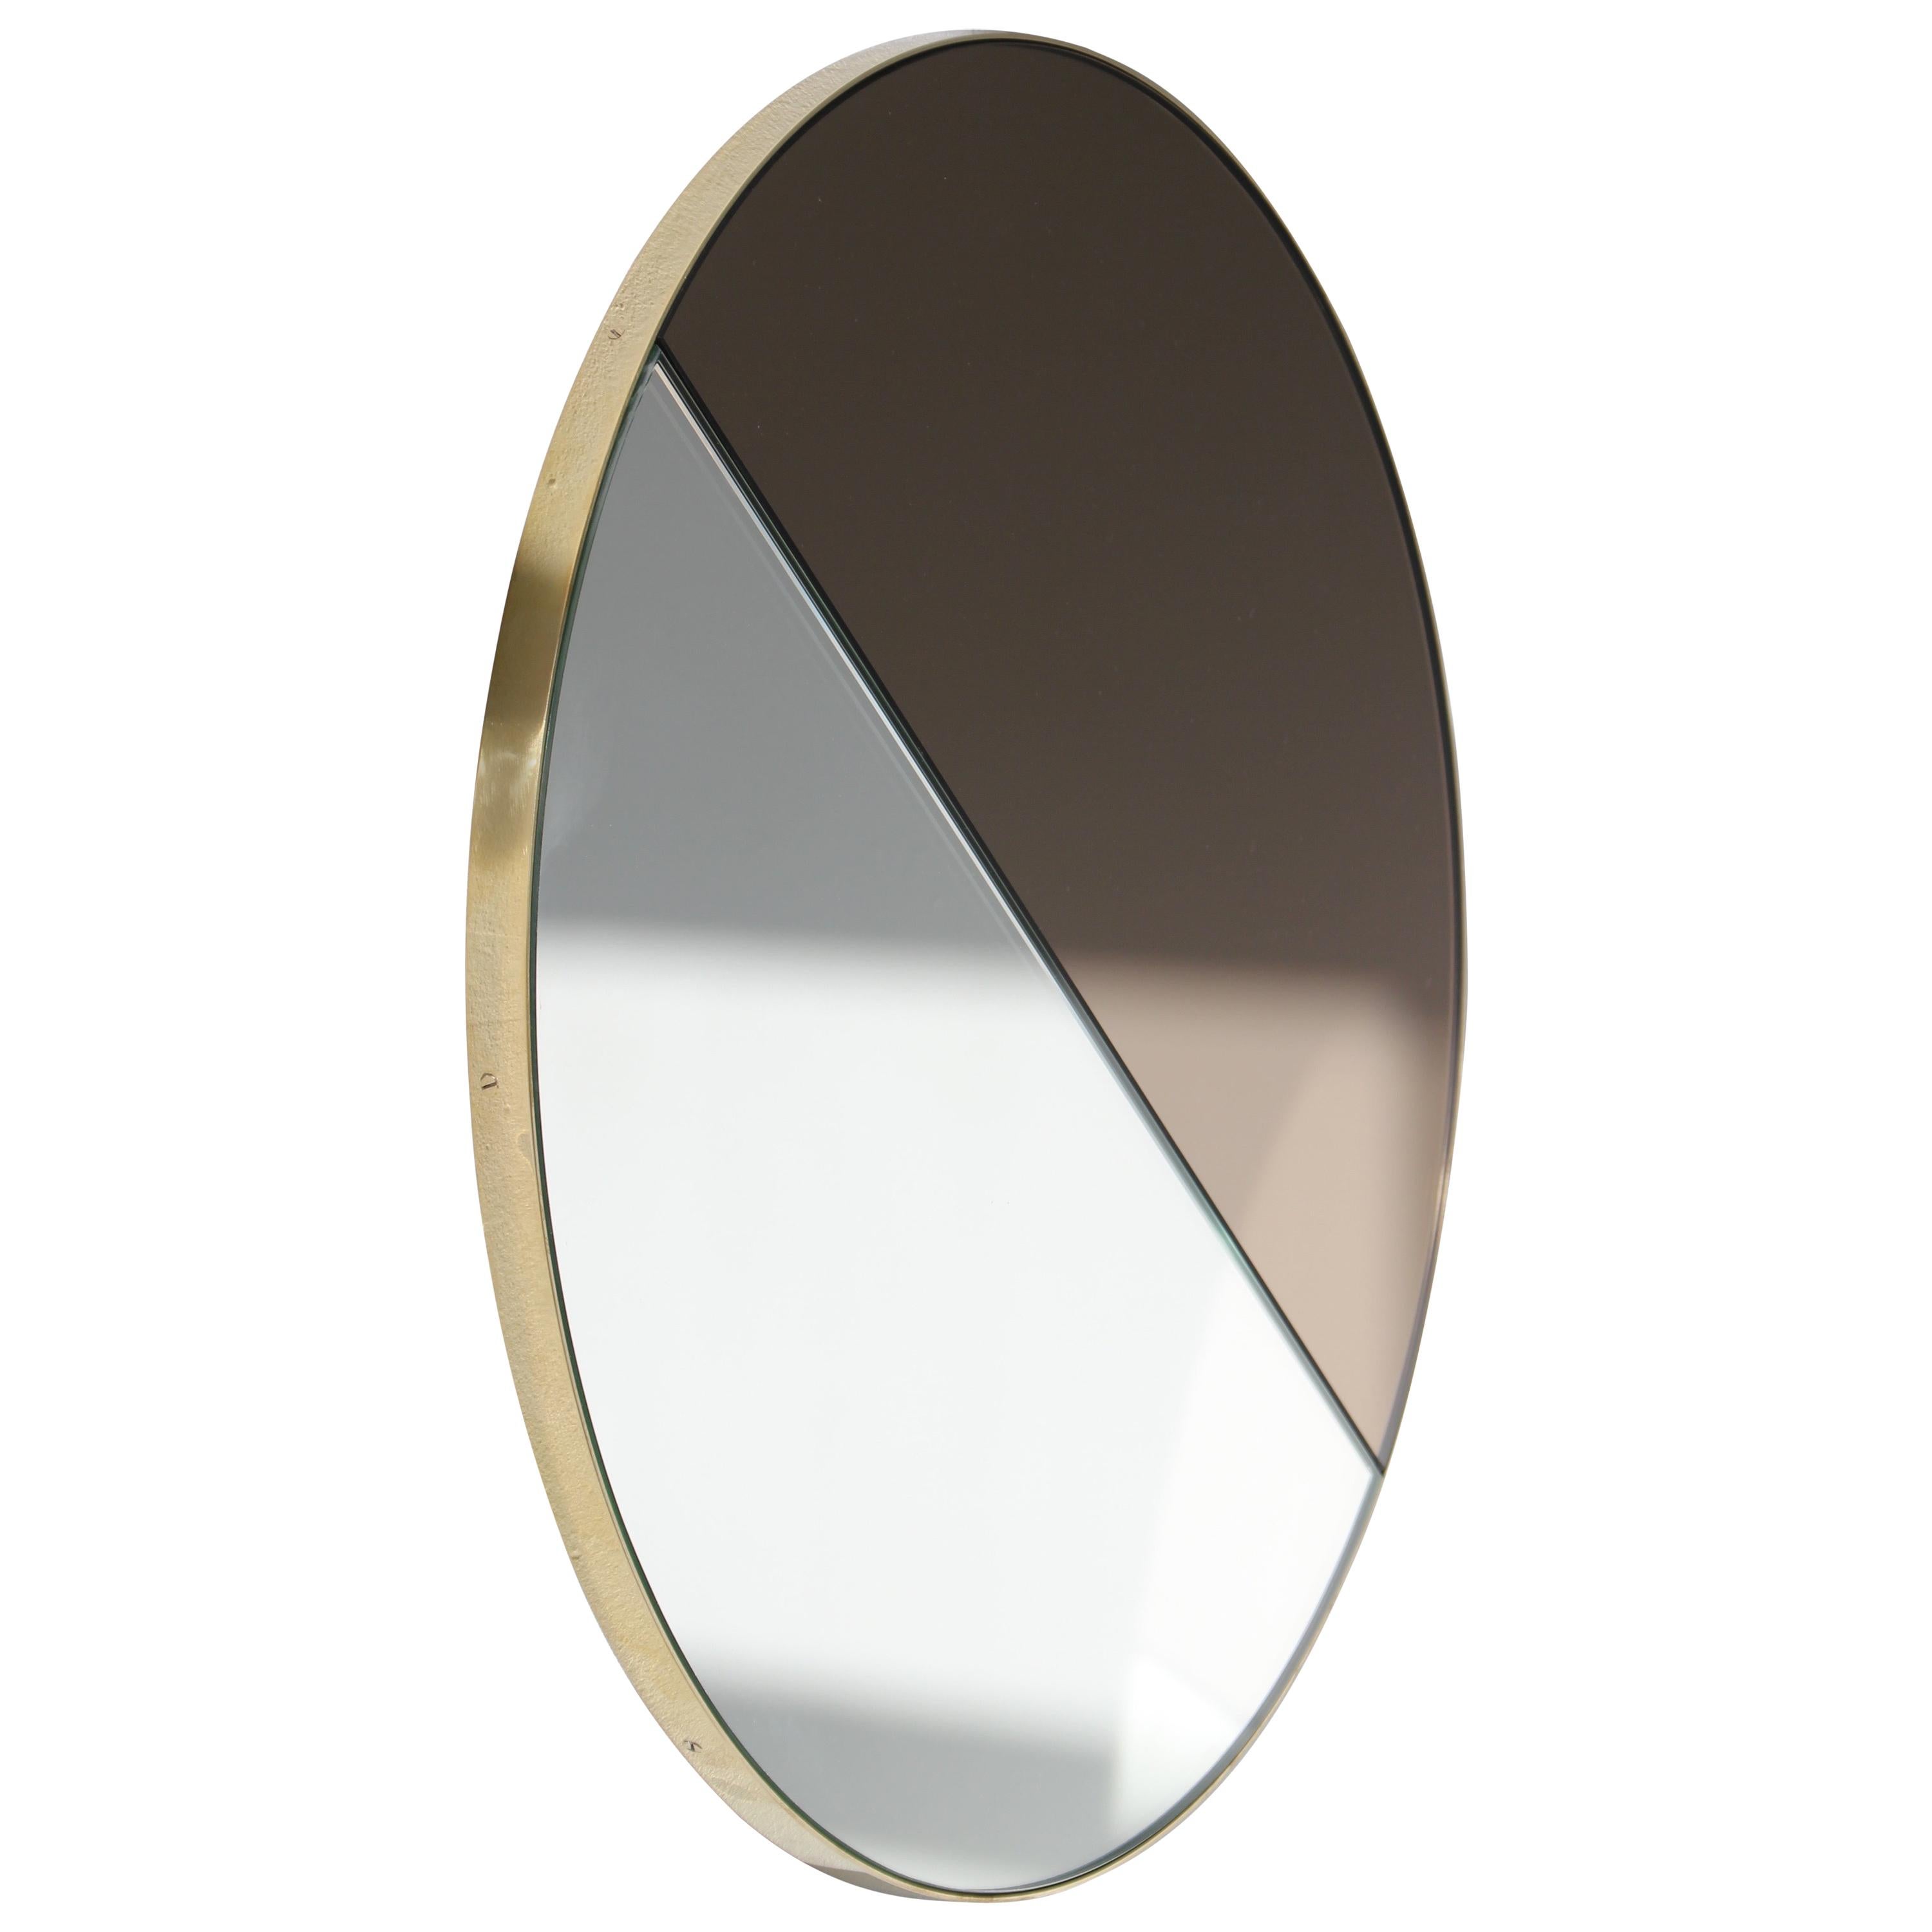 Orbis Dualis Runder Spiegel in Silber und Bronze mit Messingrahmen, XL